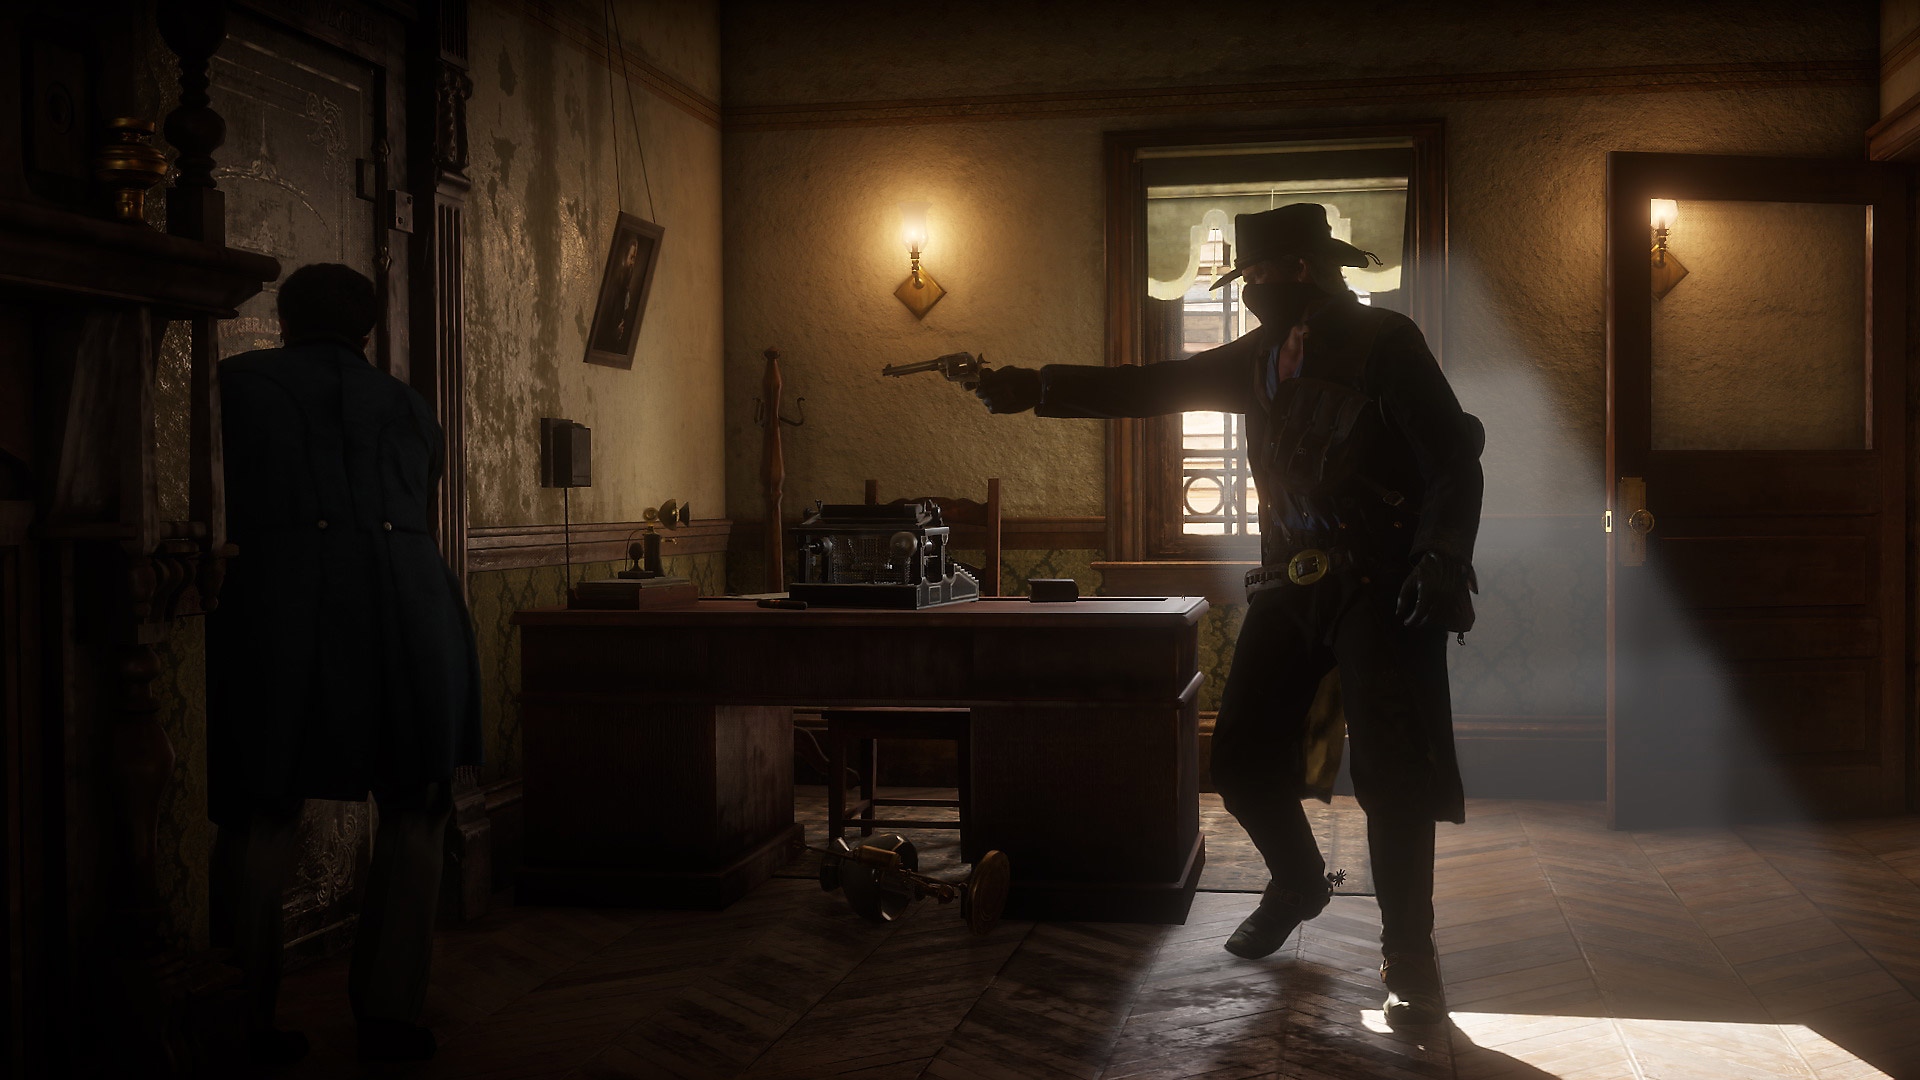 Red Dead Redemption 2 — снимок экрана с игровым процессом